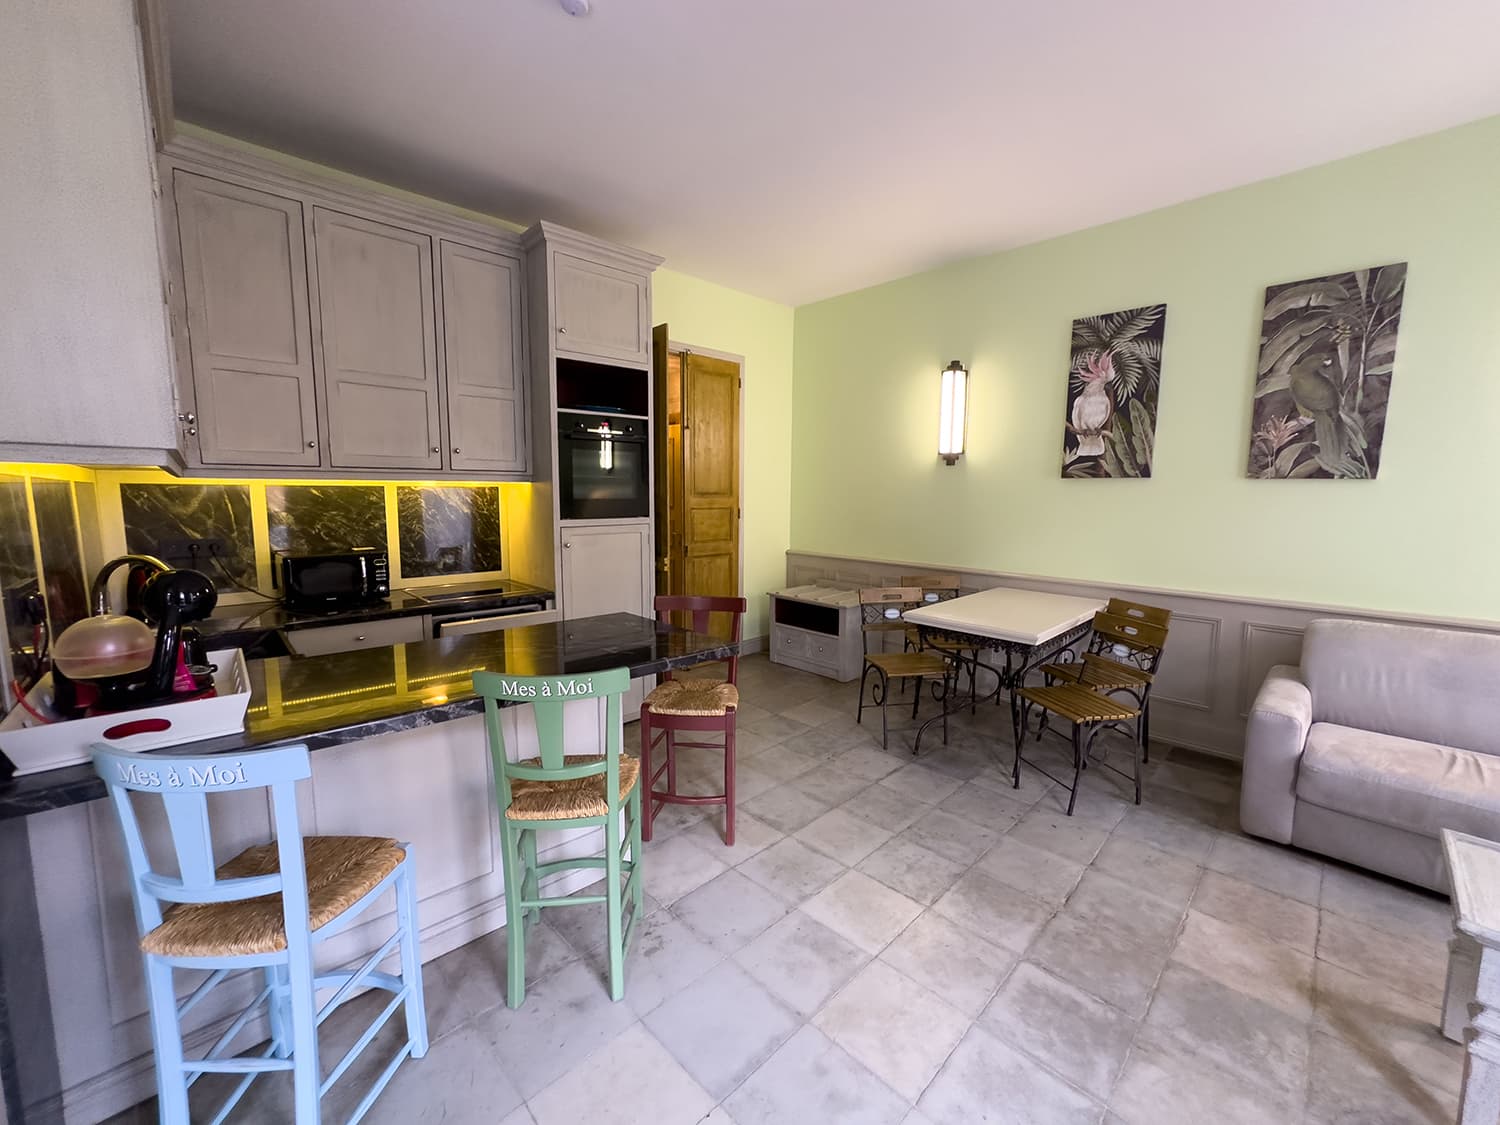 Cuisine | Appartement de vacances à Pézenas, Occitanie